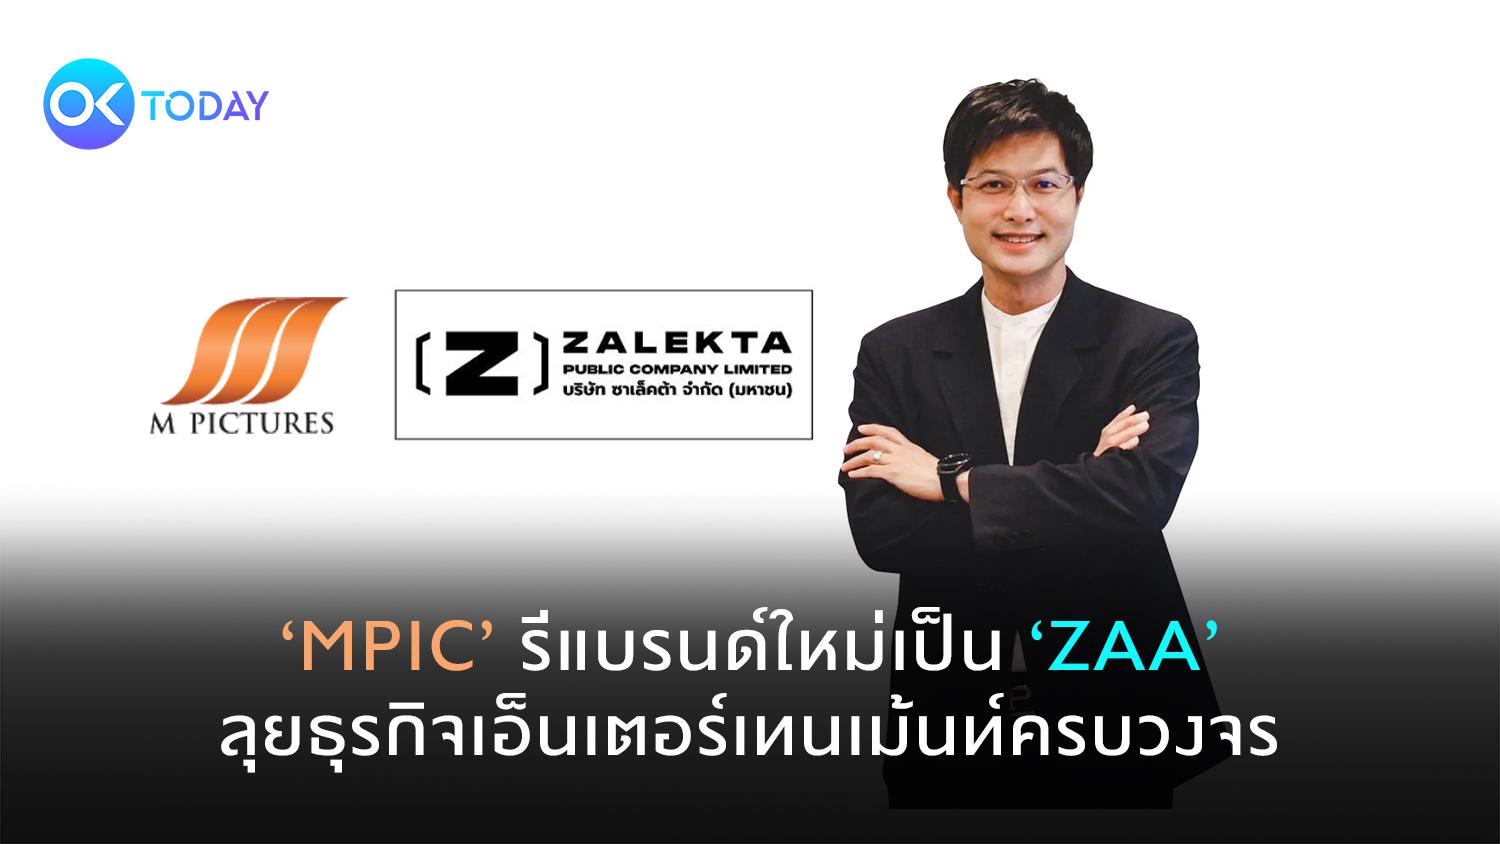 ‘MPIC’ รีแบรนด์ใหม่เป็น ‘ZAA’ ลุยธุรกิจเอ็นเตอร์เทนเม้นท์ครบวงจร